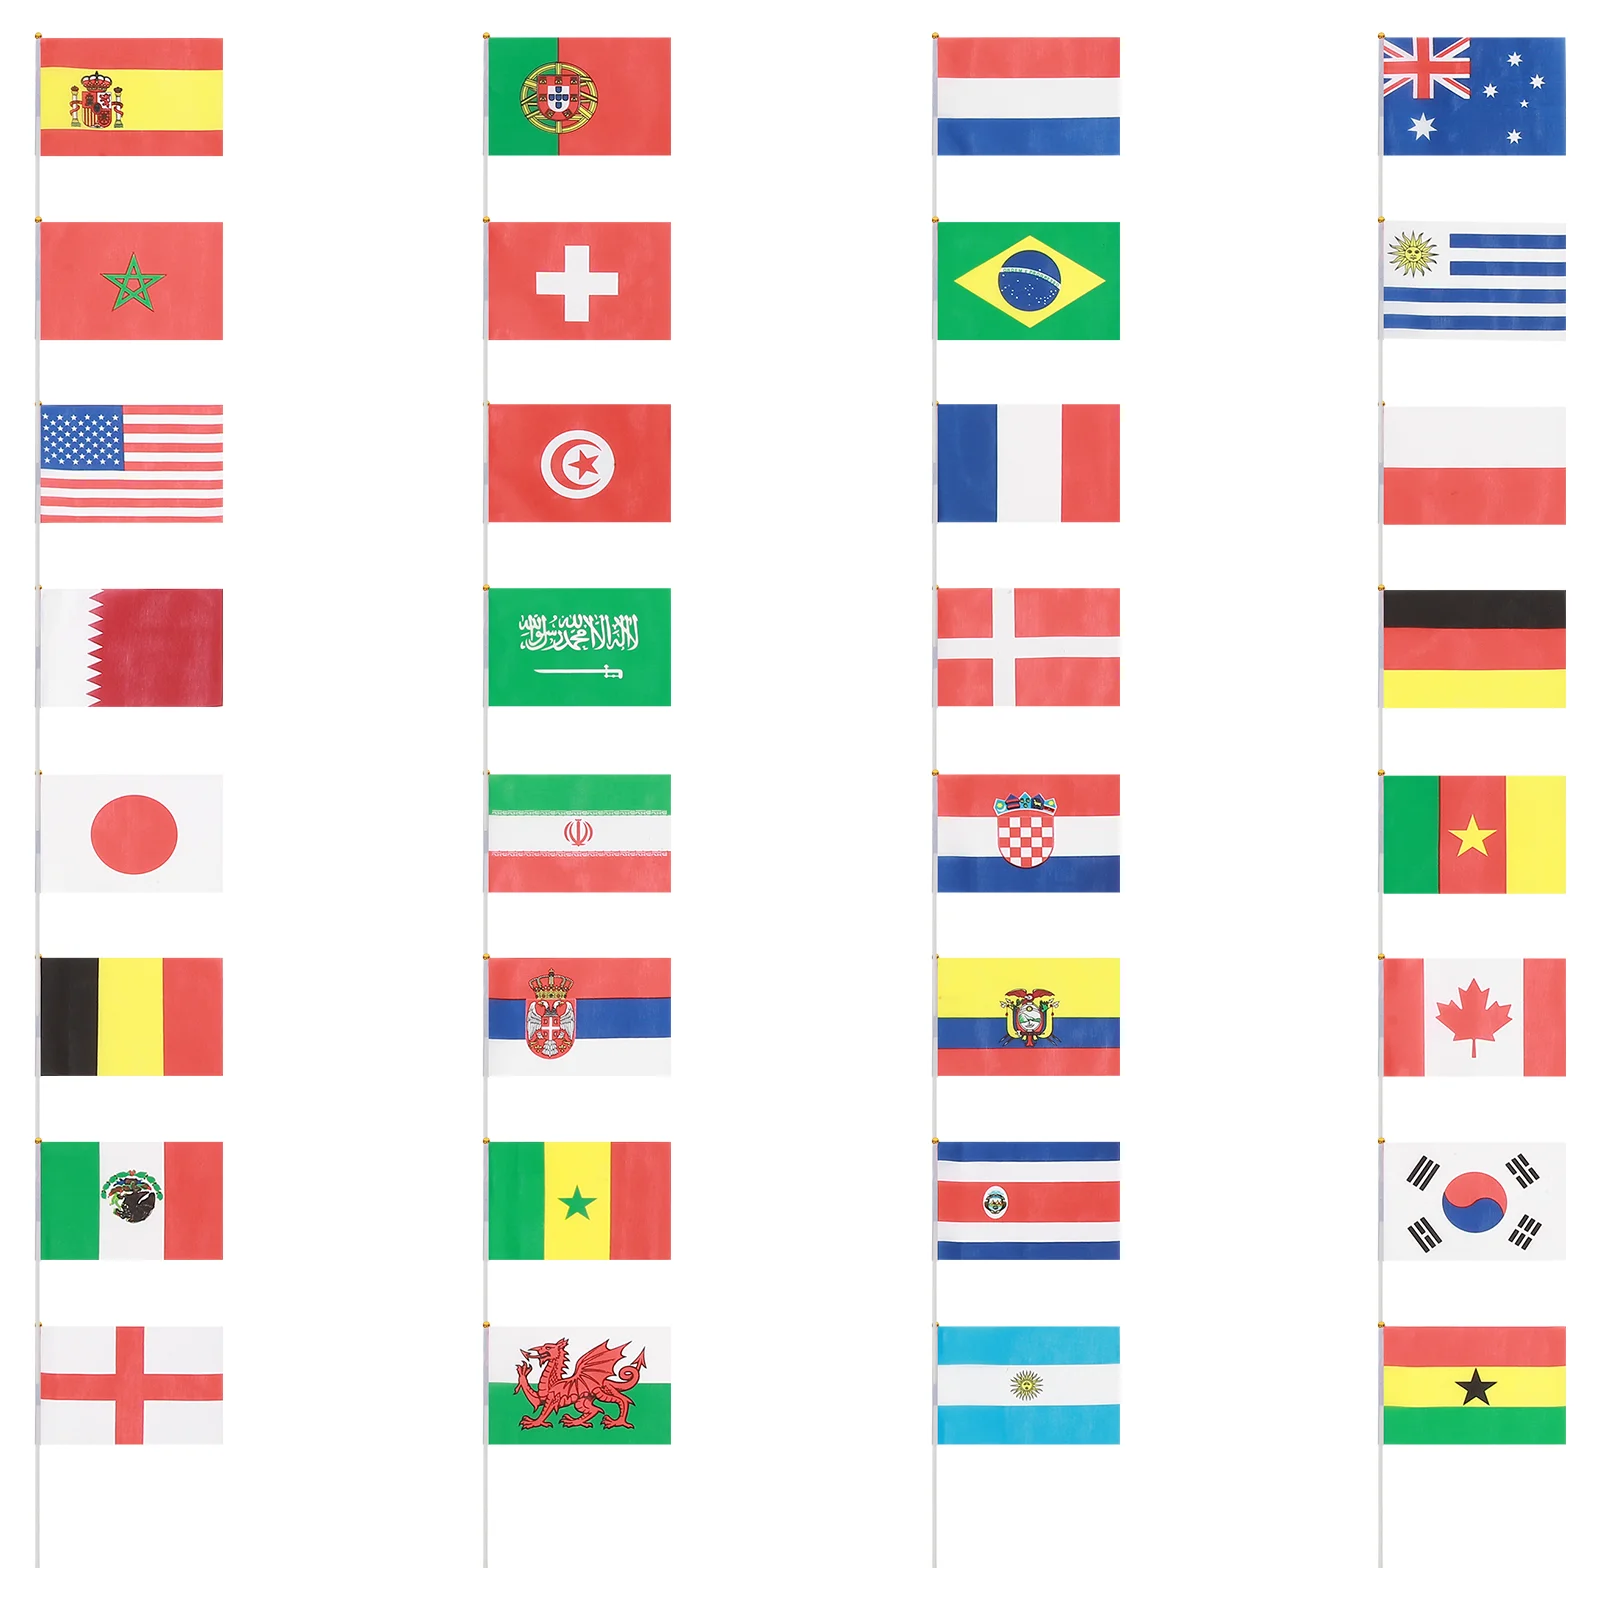 Kézi Nemzeti Zászlót Nemzetközi Világ Ország Zászló Zászlók Bar Party Dekoráció Kéz integetett zászló országok - 0